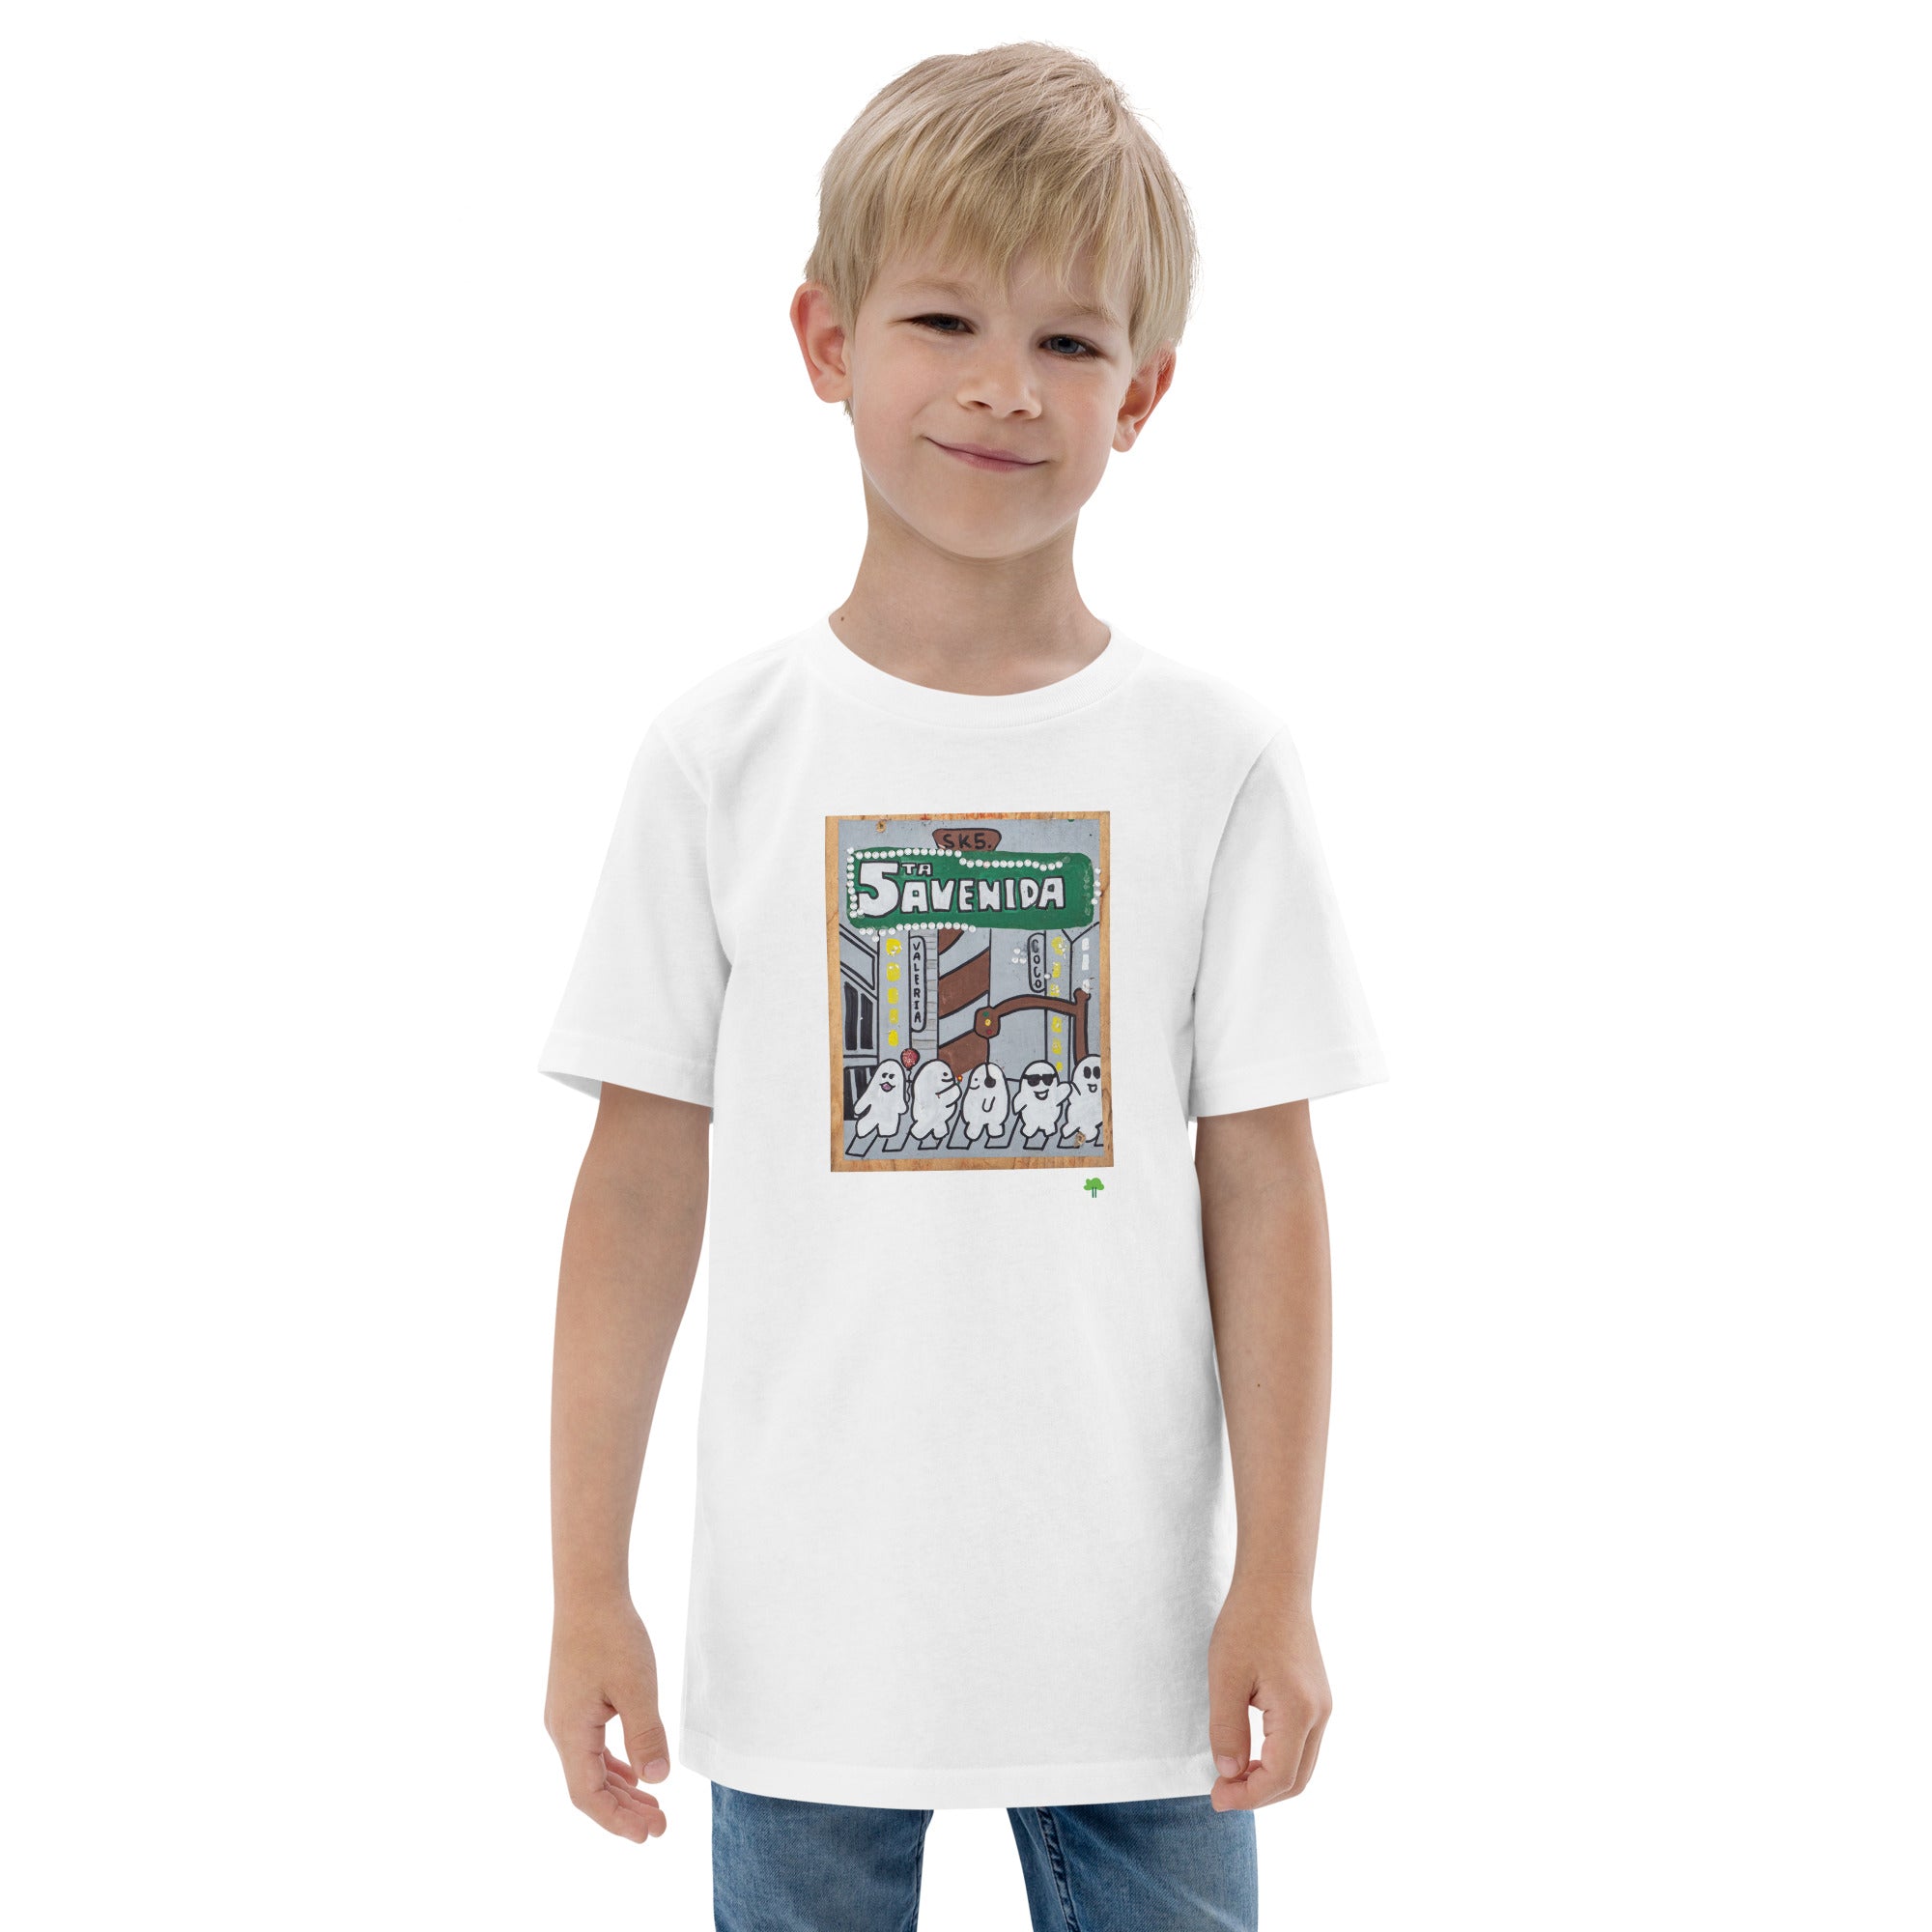 I Temp - Sabana- K5 | Youth jersey t-shirt